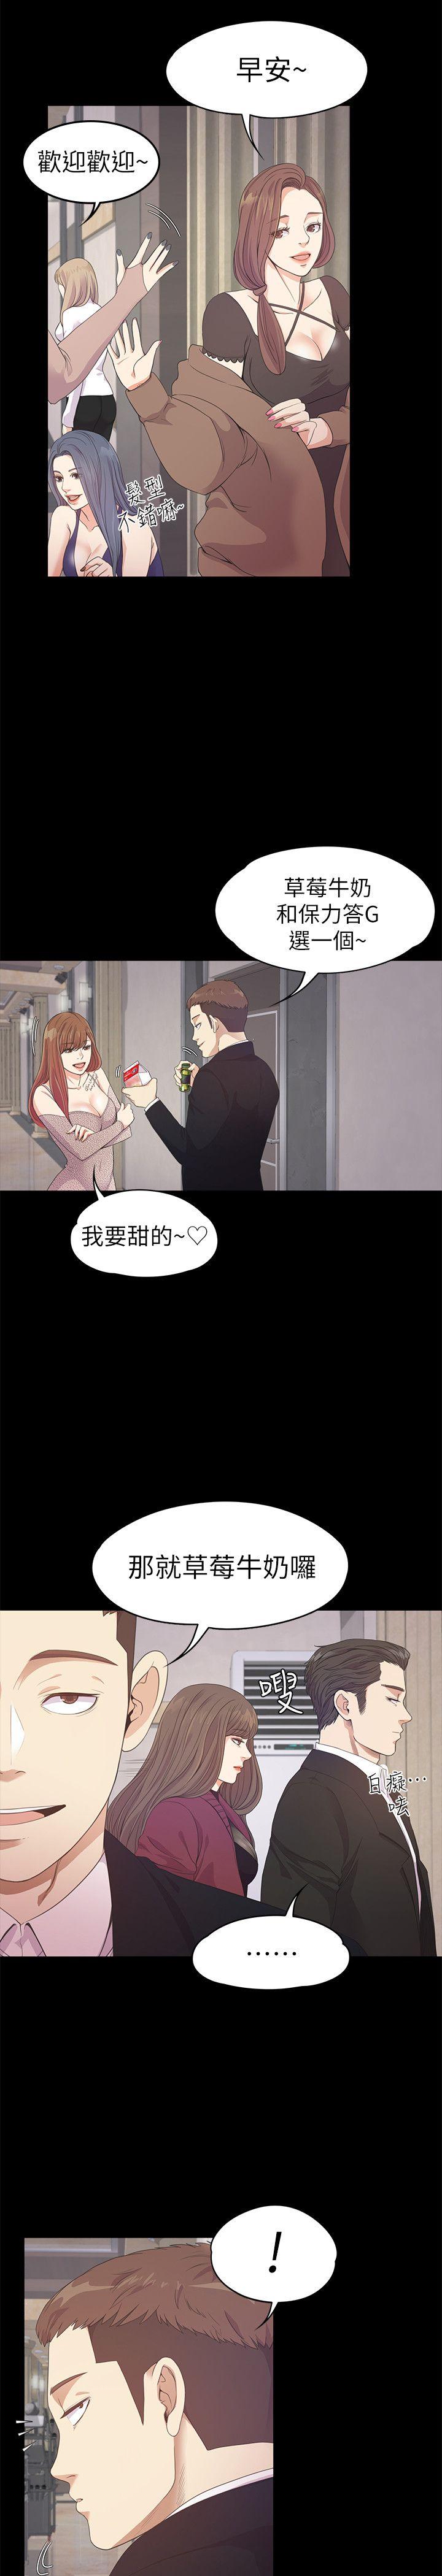 《爱上酒店妹(江南罗曼史)》漫画 第32话-盛开以及枯萎的花朵[01]